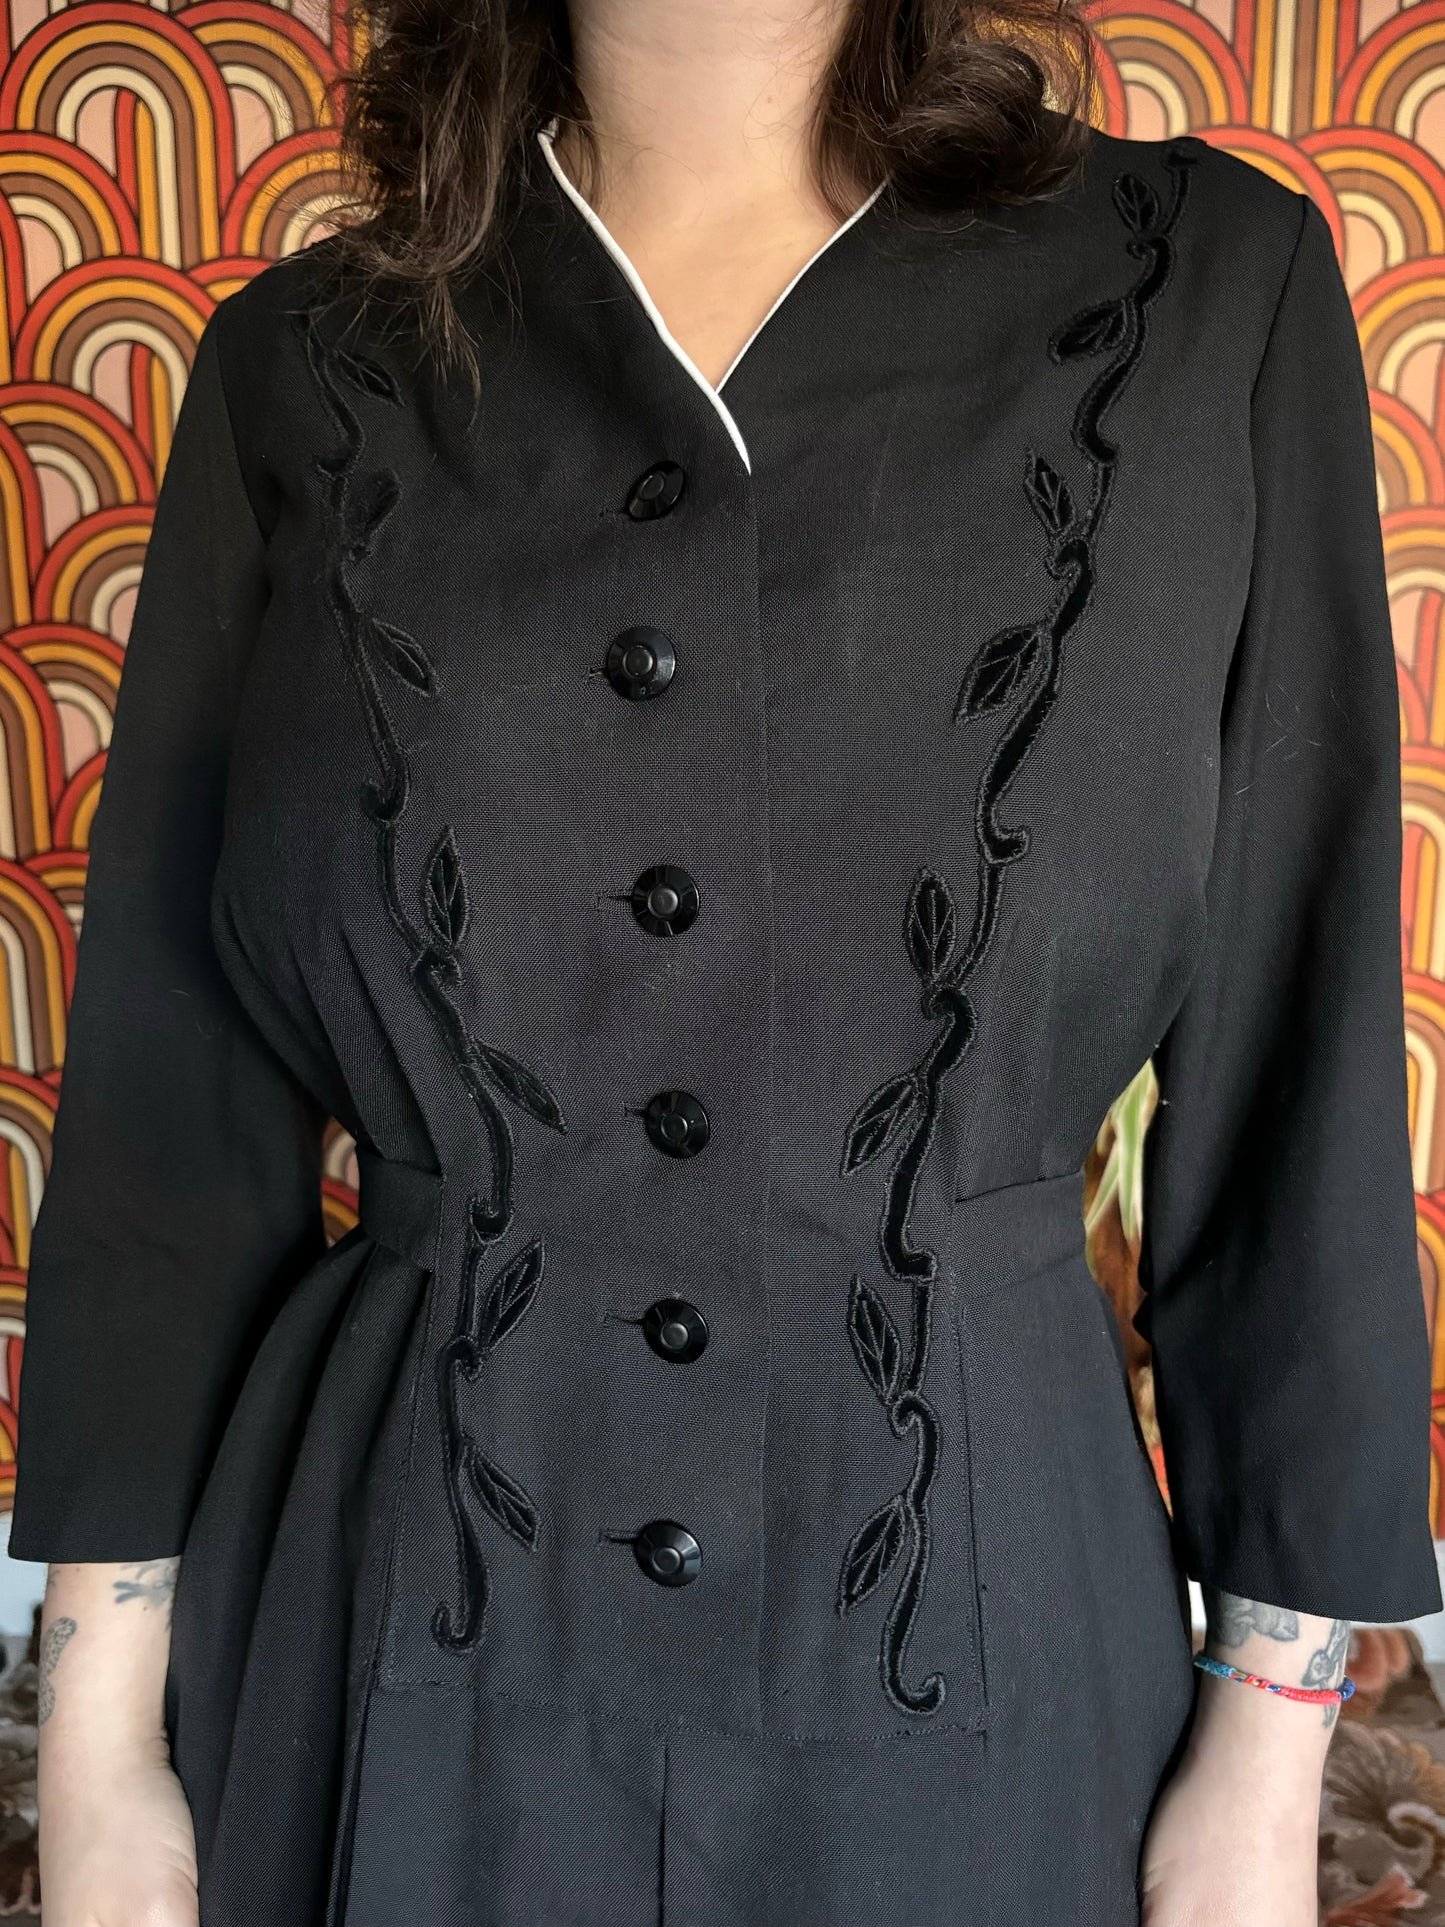 Vintage 60s Black Wool Dress